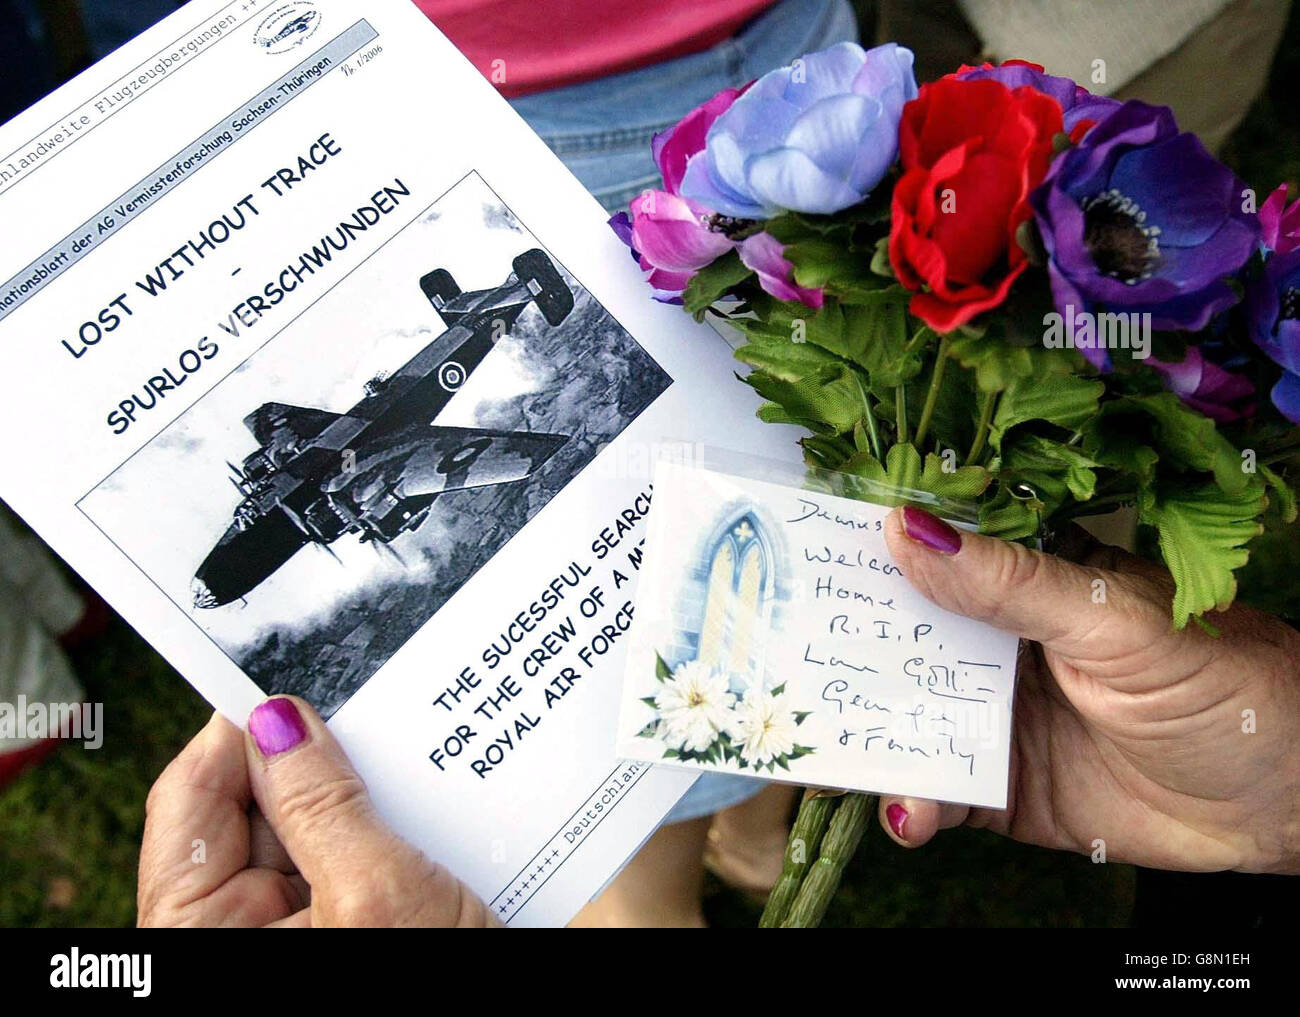 Une brochure et un bouquet de fleurs ont lieu à un nouveau monument commémoratif près d'Annaburg, en Allemagne, le mercredi 31 2005 août, où les amis et la famille des sept membres de l'équipage qui sont morts après l'accident de leur bombardier d'Halifax sur le site en mars 1944, lors de la deuxième Guerre mondiale. Voir PA Story FUNÉRAIRES. APPUYEZ SUR ASSOCIATION photo. Le crédit photo devrait se lire comme suit : Gareth Fuller/PA Banque D'Images